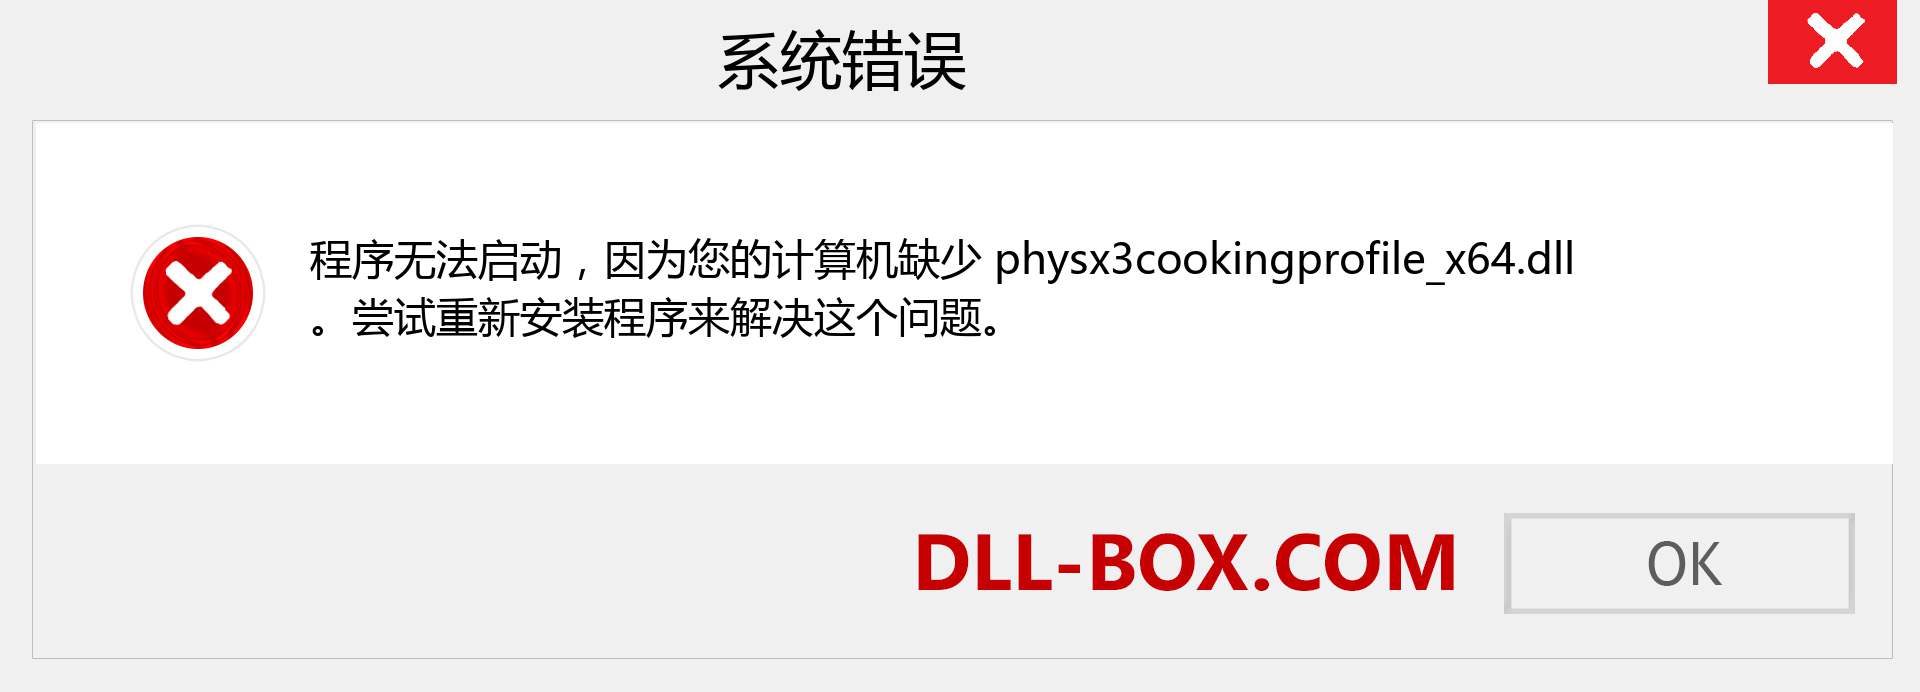 physx3cookingprofile_x64.dll 文件丢失？。 适用于 Windows 7、8、10 的下载 - 修复 Windows、照片、图像上的 physx3cookingprofile_x64 dll 丢失错误